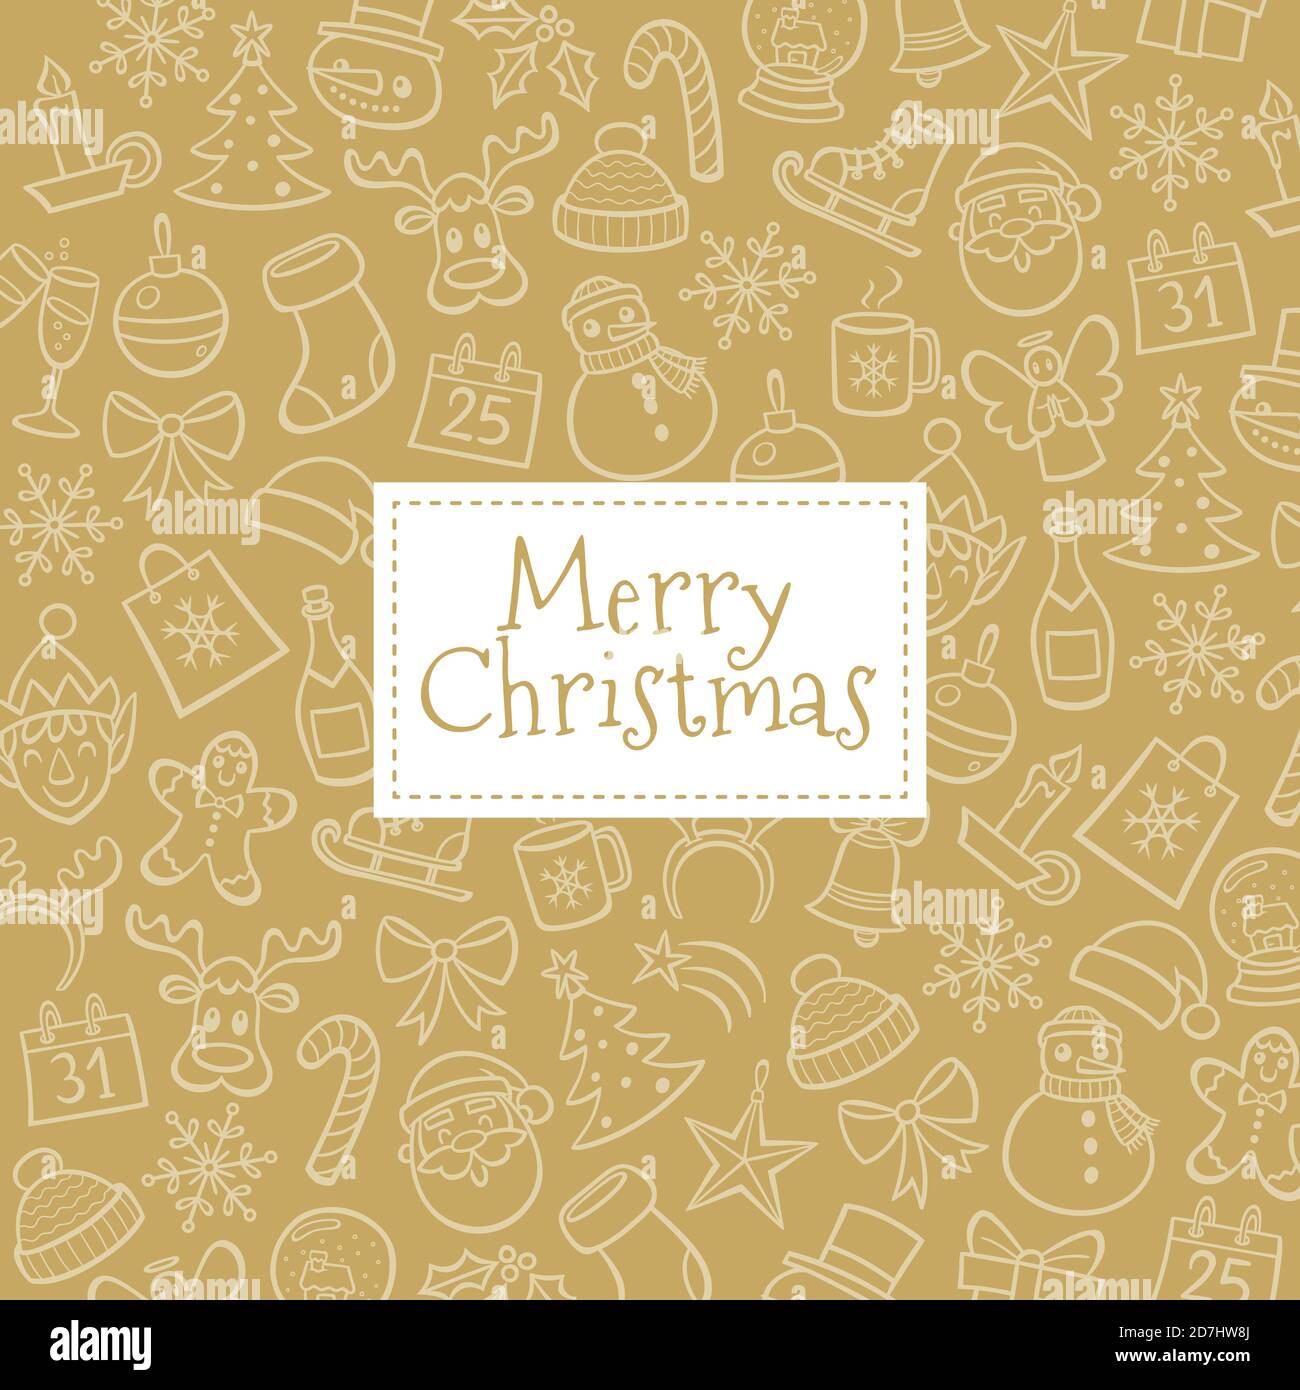 Biglietto d'auguri di Natale. Sfondo dorato con elementi di design disegnati a mano. Illustrazione vettoriale. Illustrazione Vettoriale